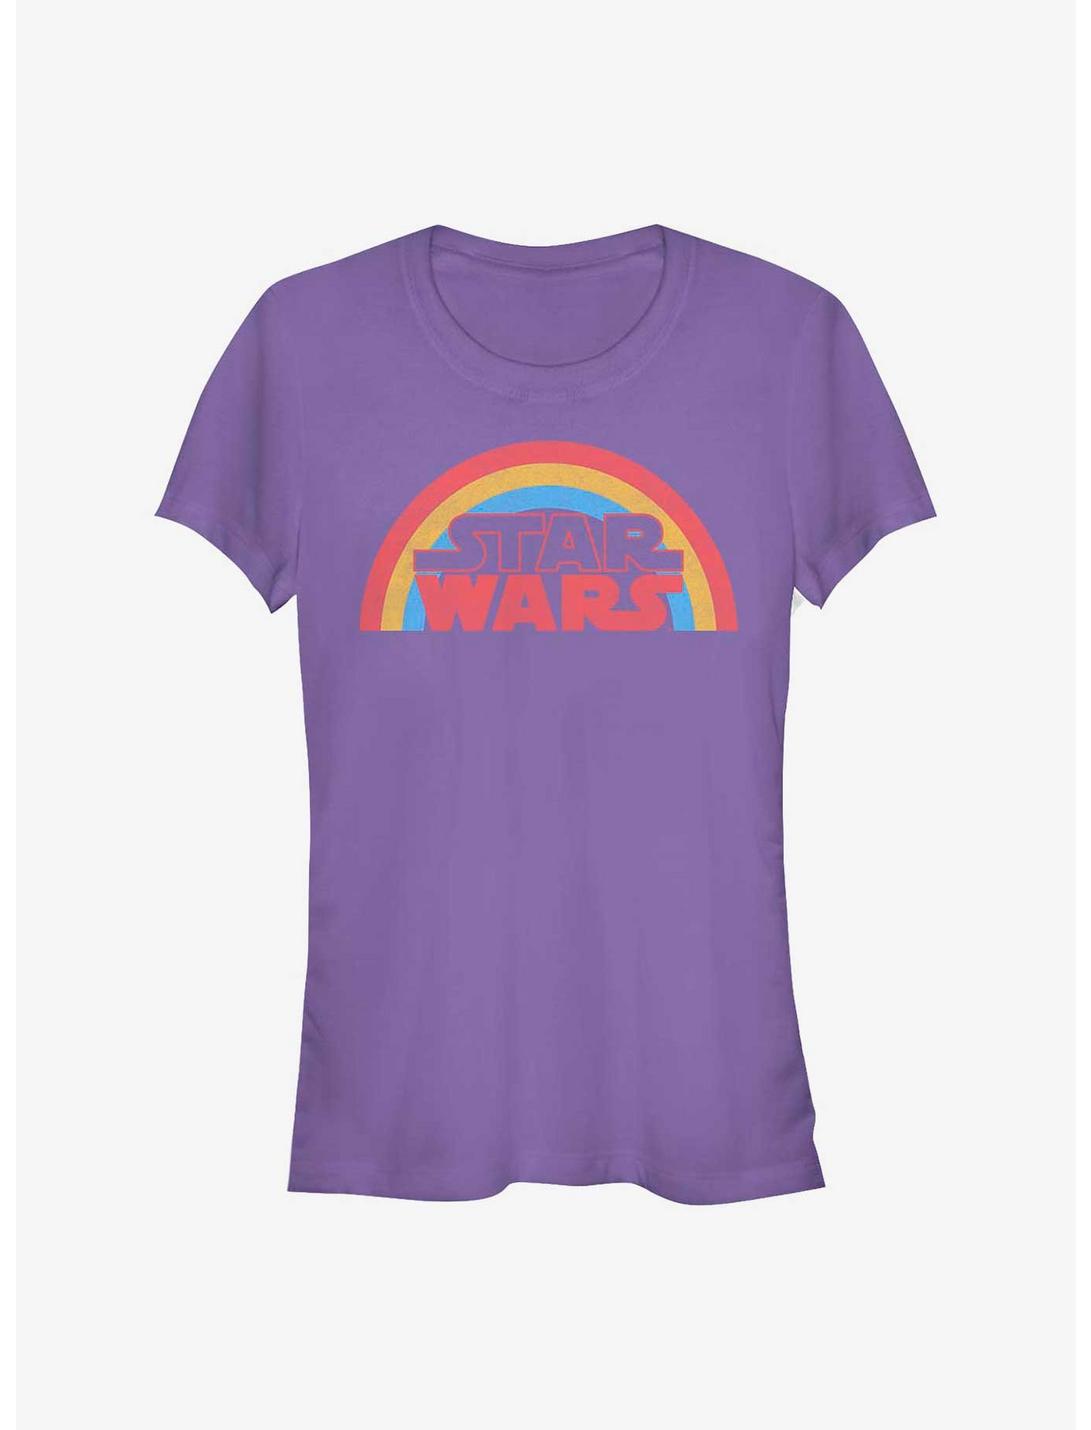 Star Wars Rainbow Star Wars Girls T-Shirt, PURPLE, hi-res